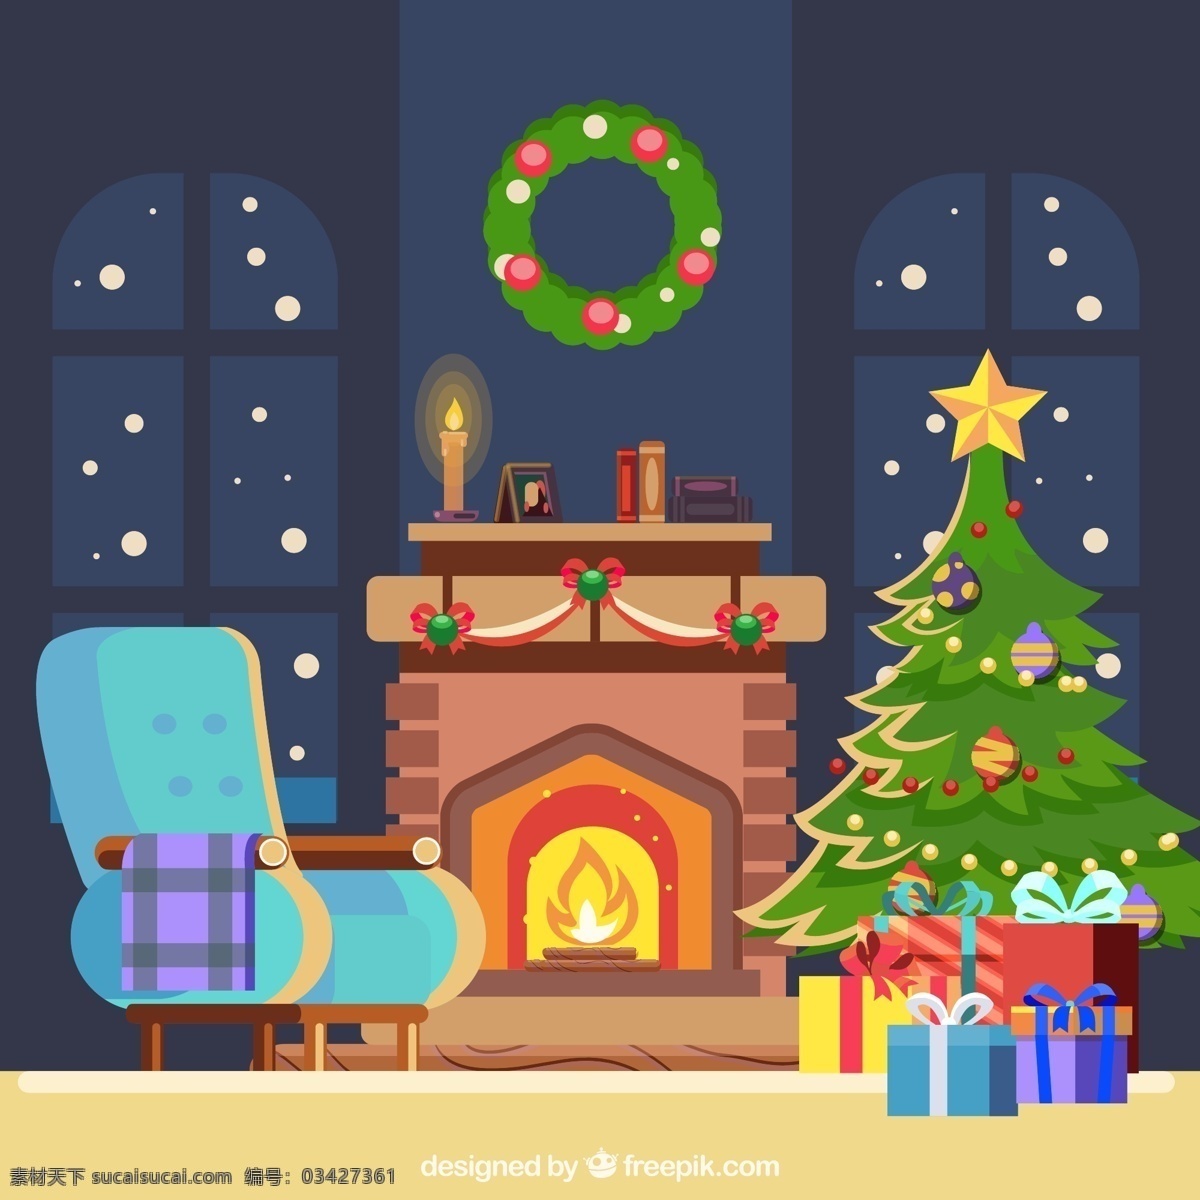 温暖 圣诞节 客厅 矢量 壁炉 节日 礼物 沙发 圣诞树 温馨 夜景